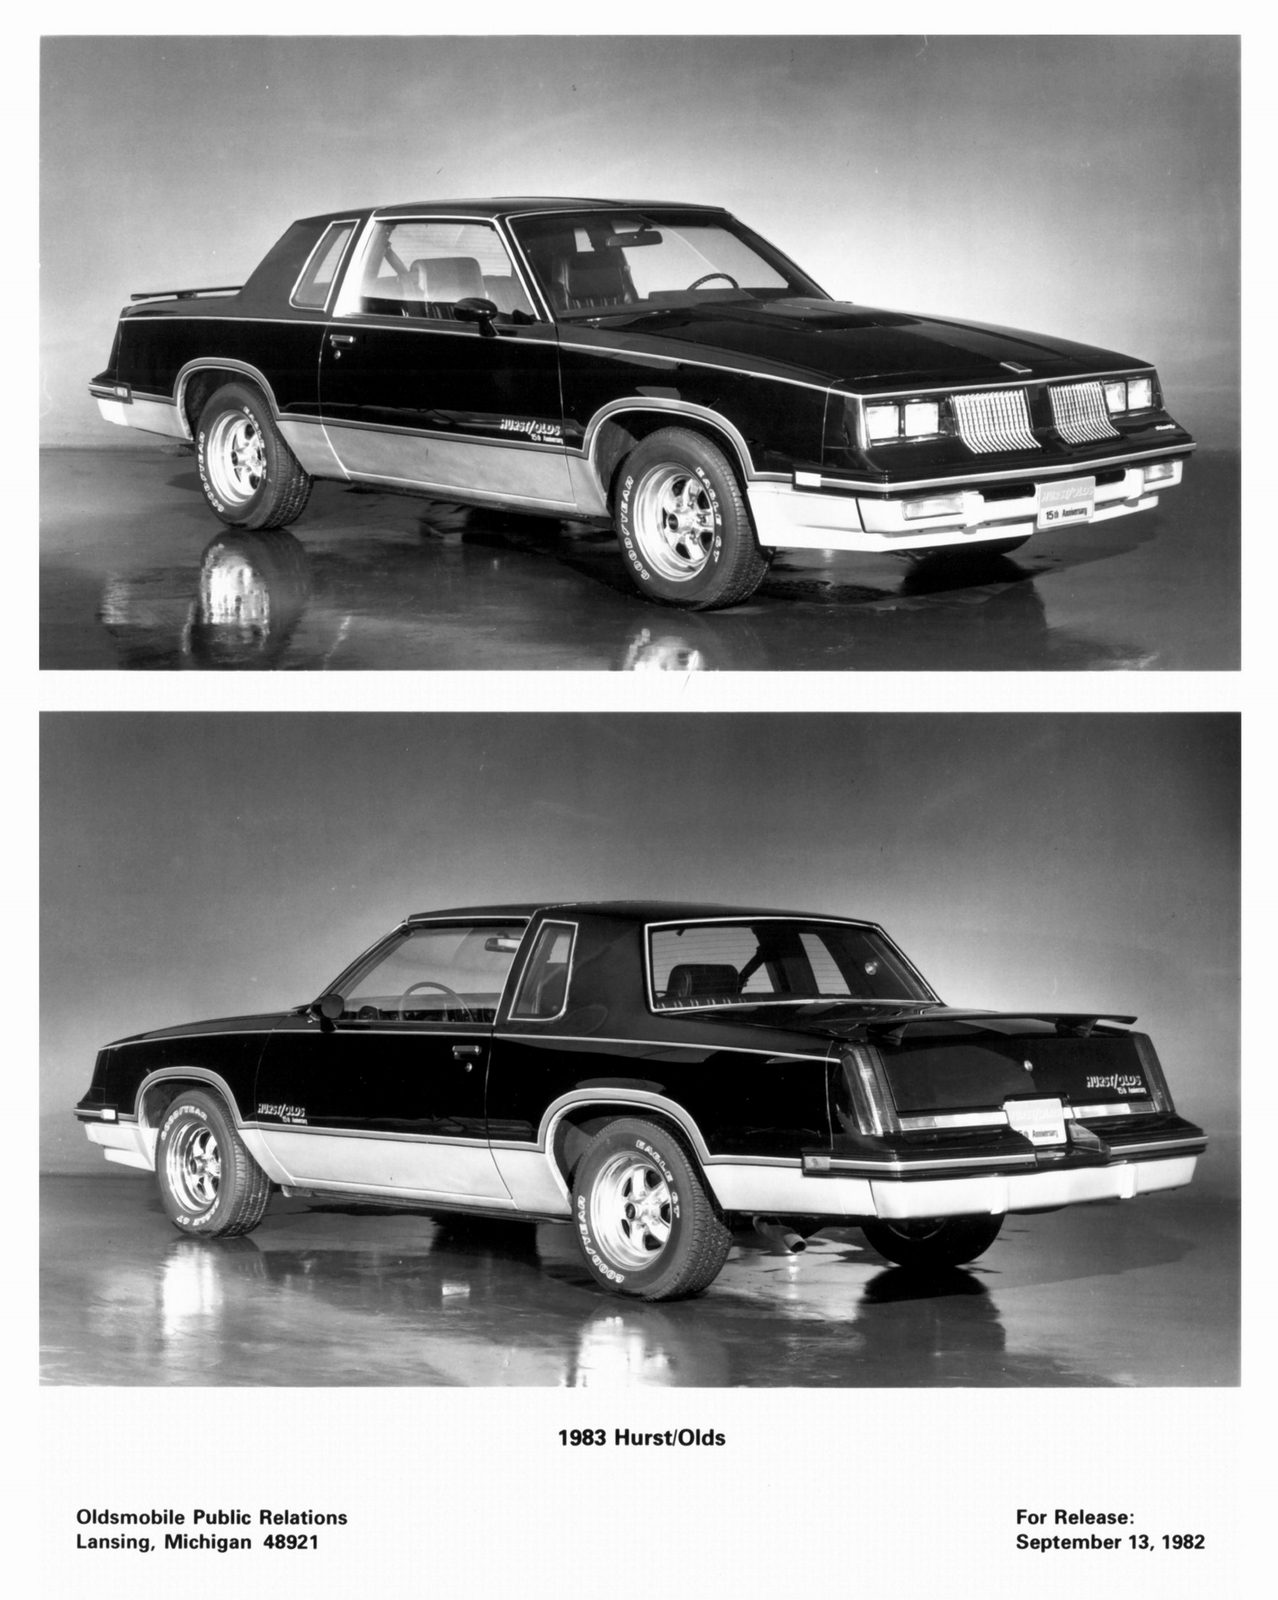 n_1983 Oldsmobile Hurst Olds Press Release-04.jpg